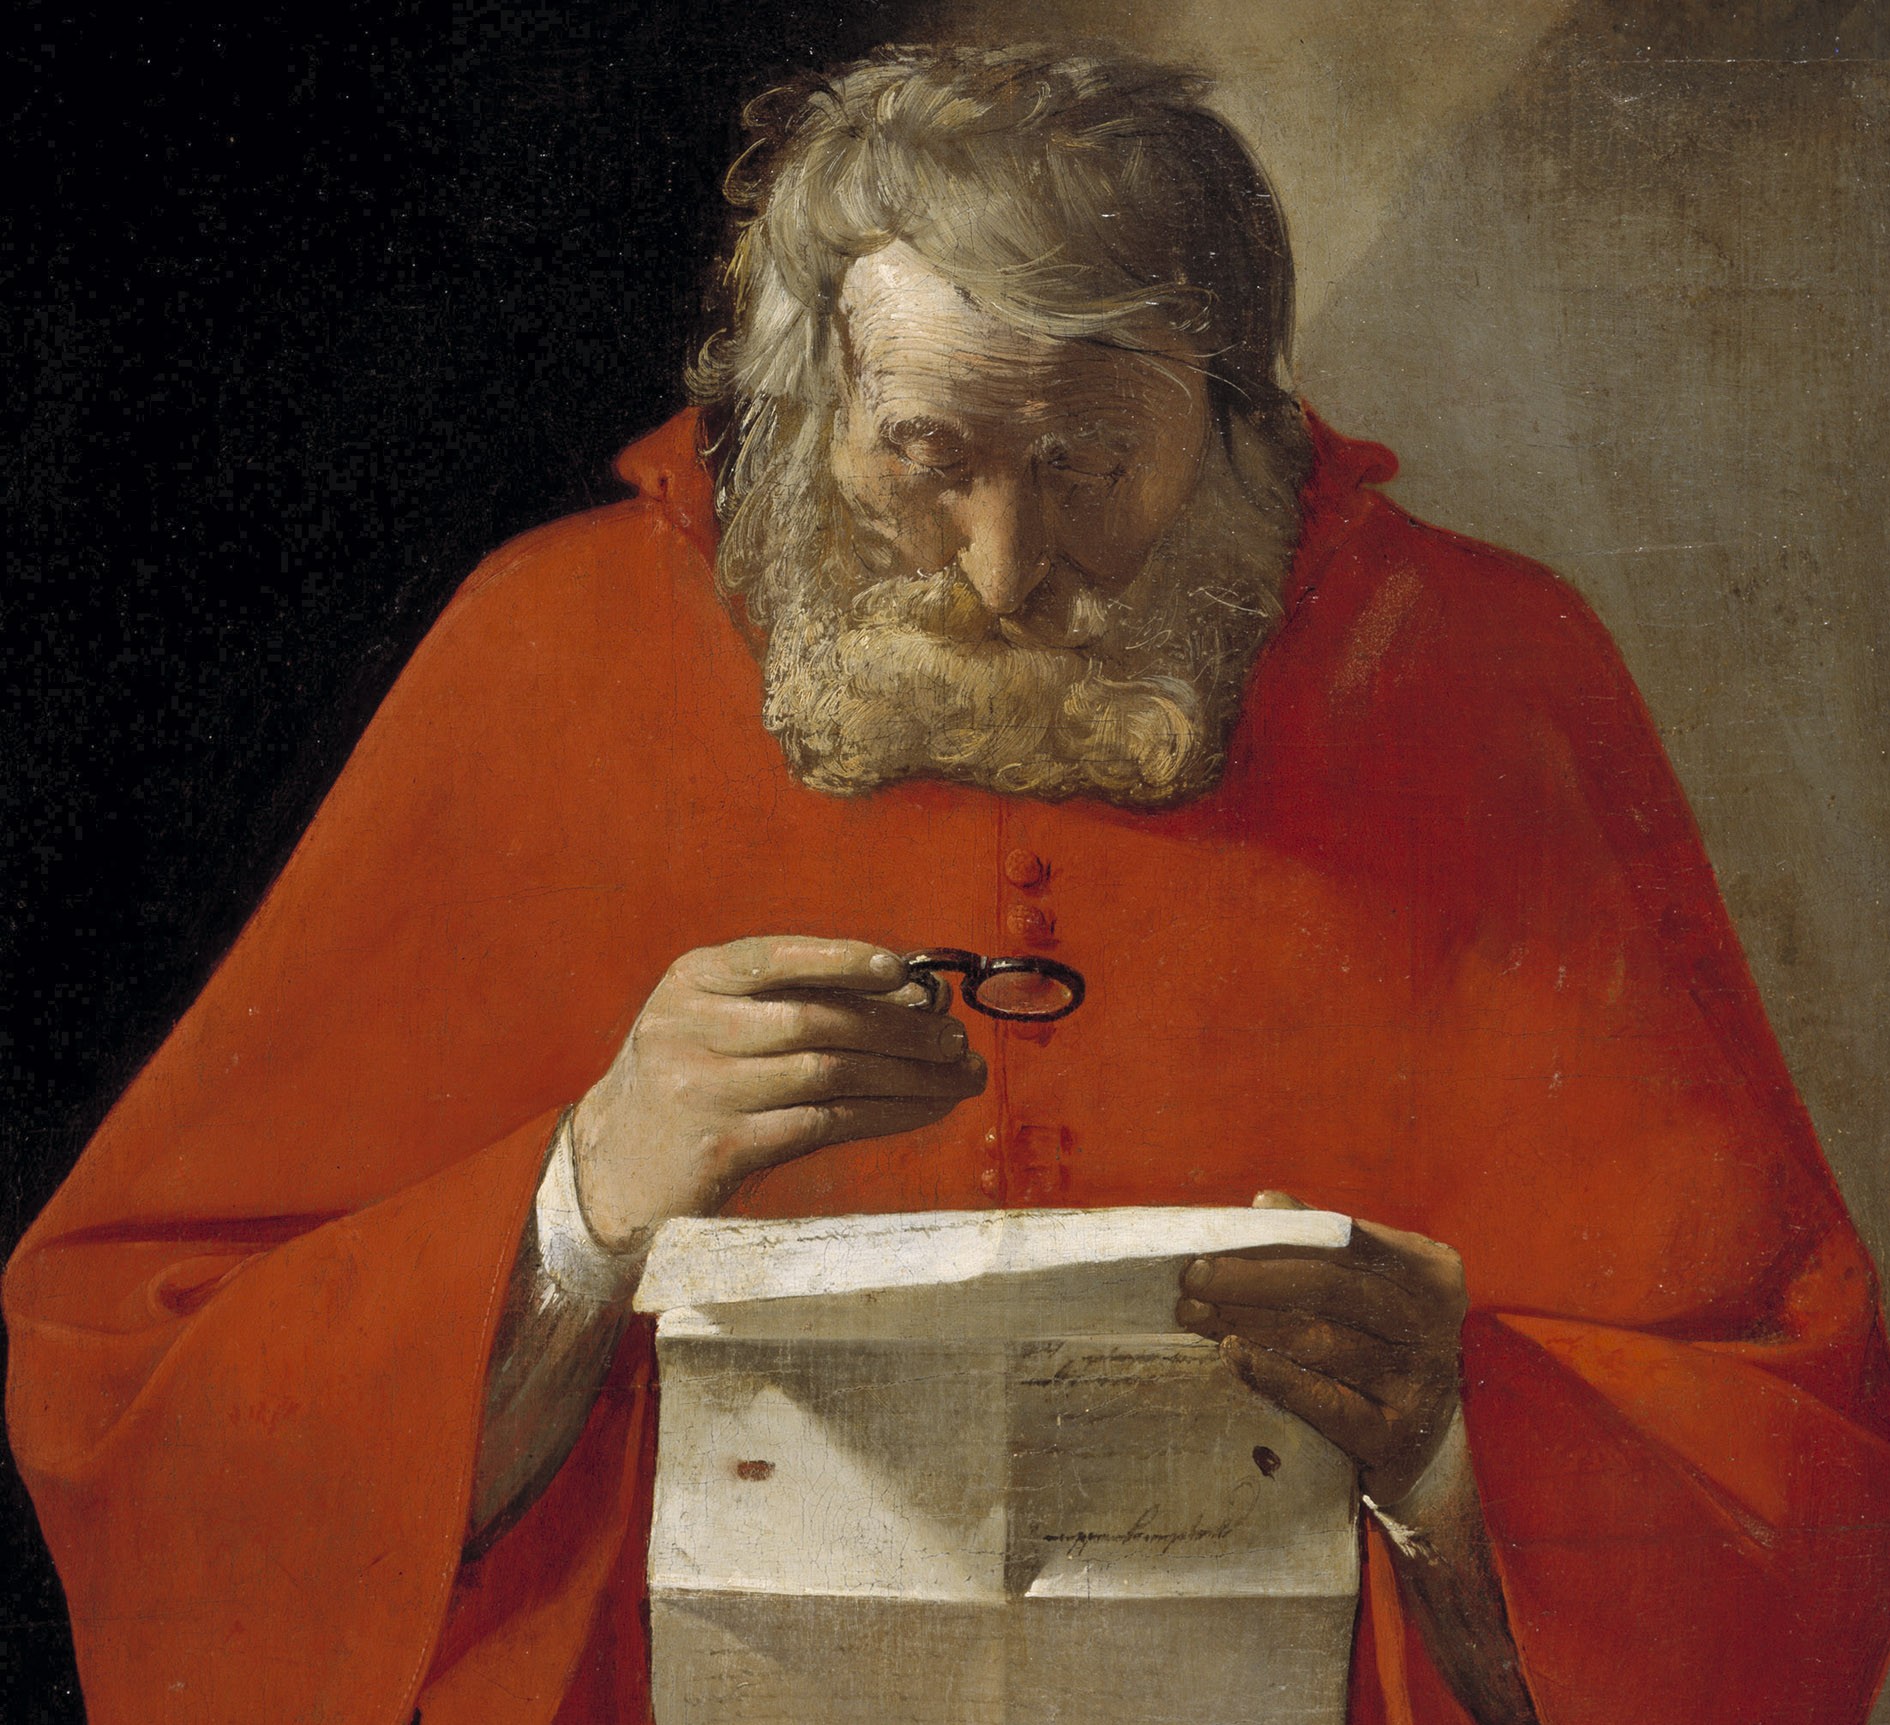 Sant Jeroni, patró dels traductors, llegint una carta